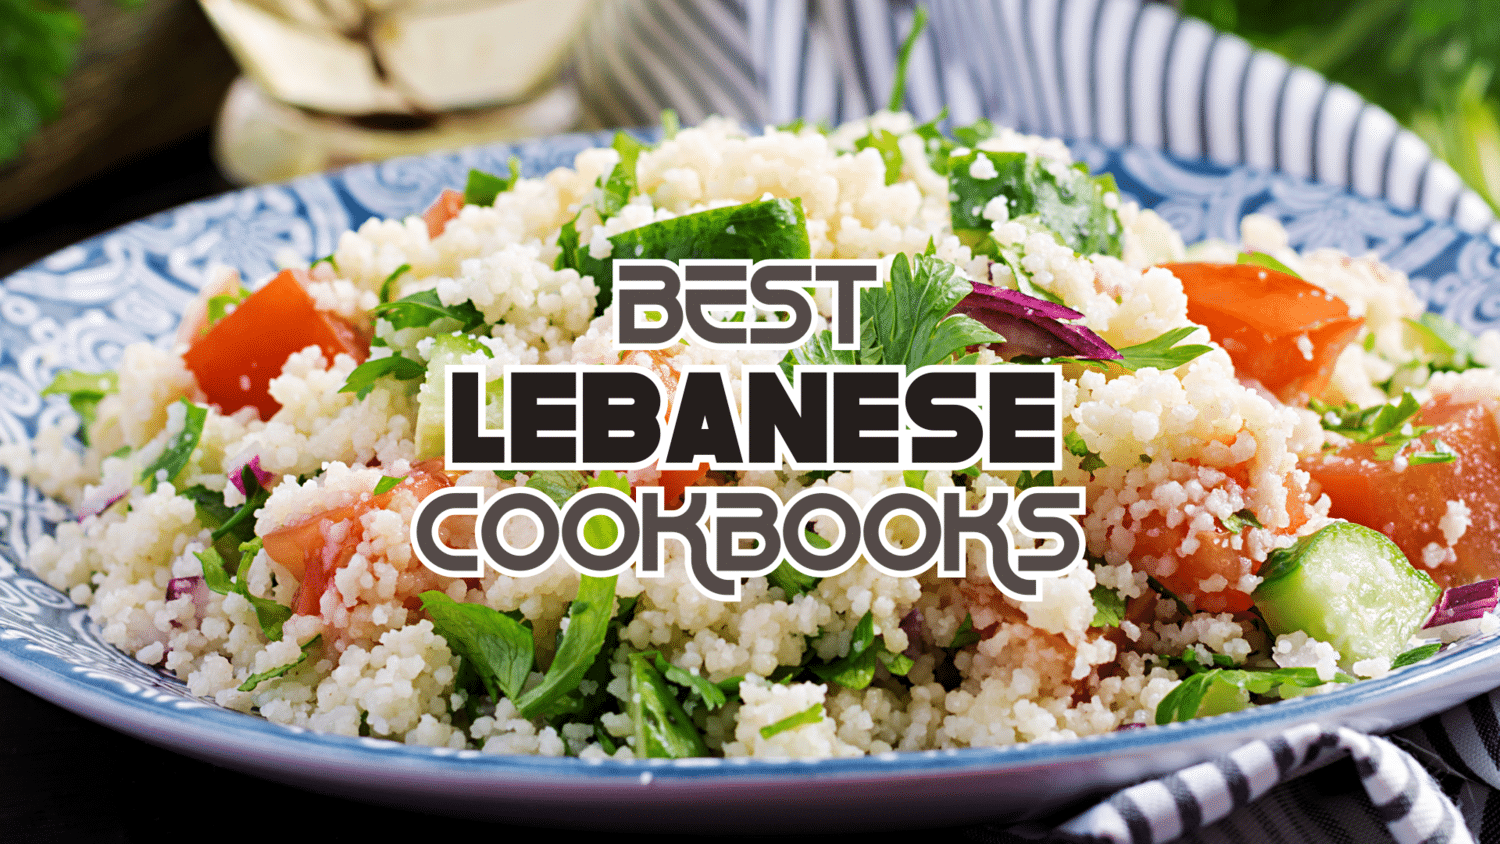 Best Lebanese Cookbooks